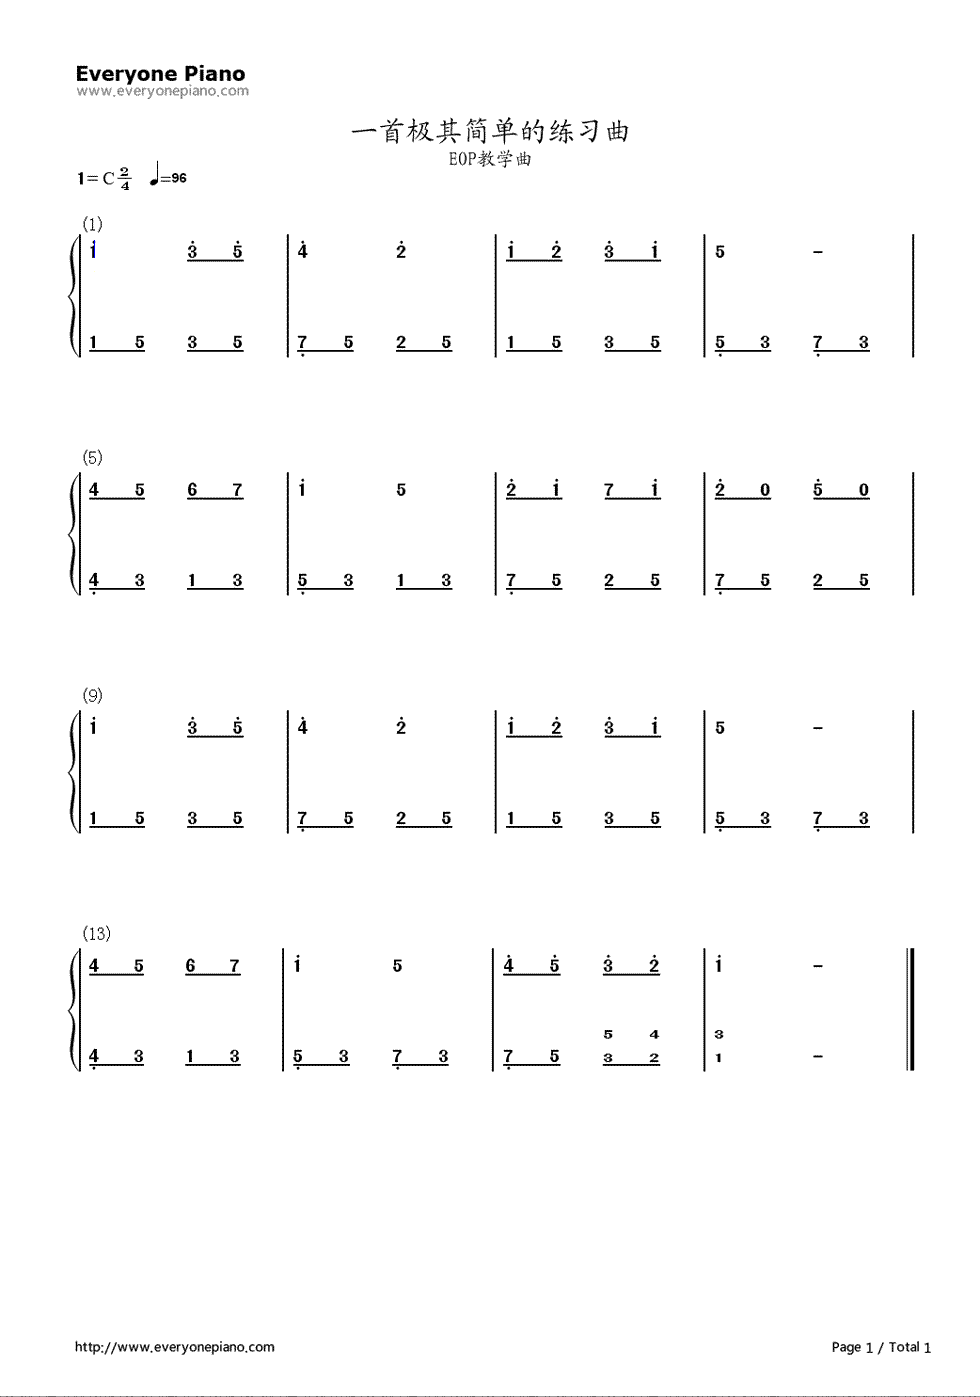 一首极其简单的练习曲钢琴简谱-数字双手-EOP教学曲1